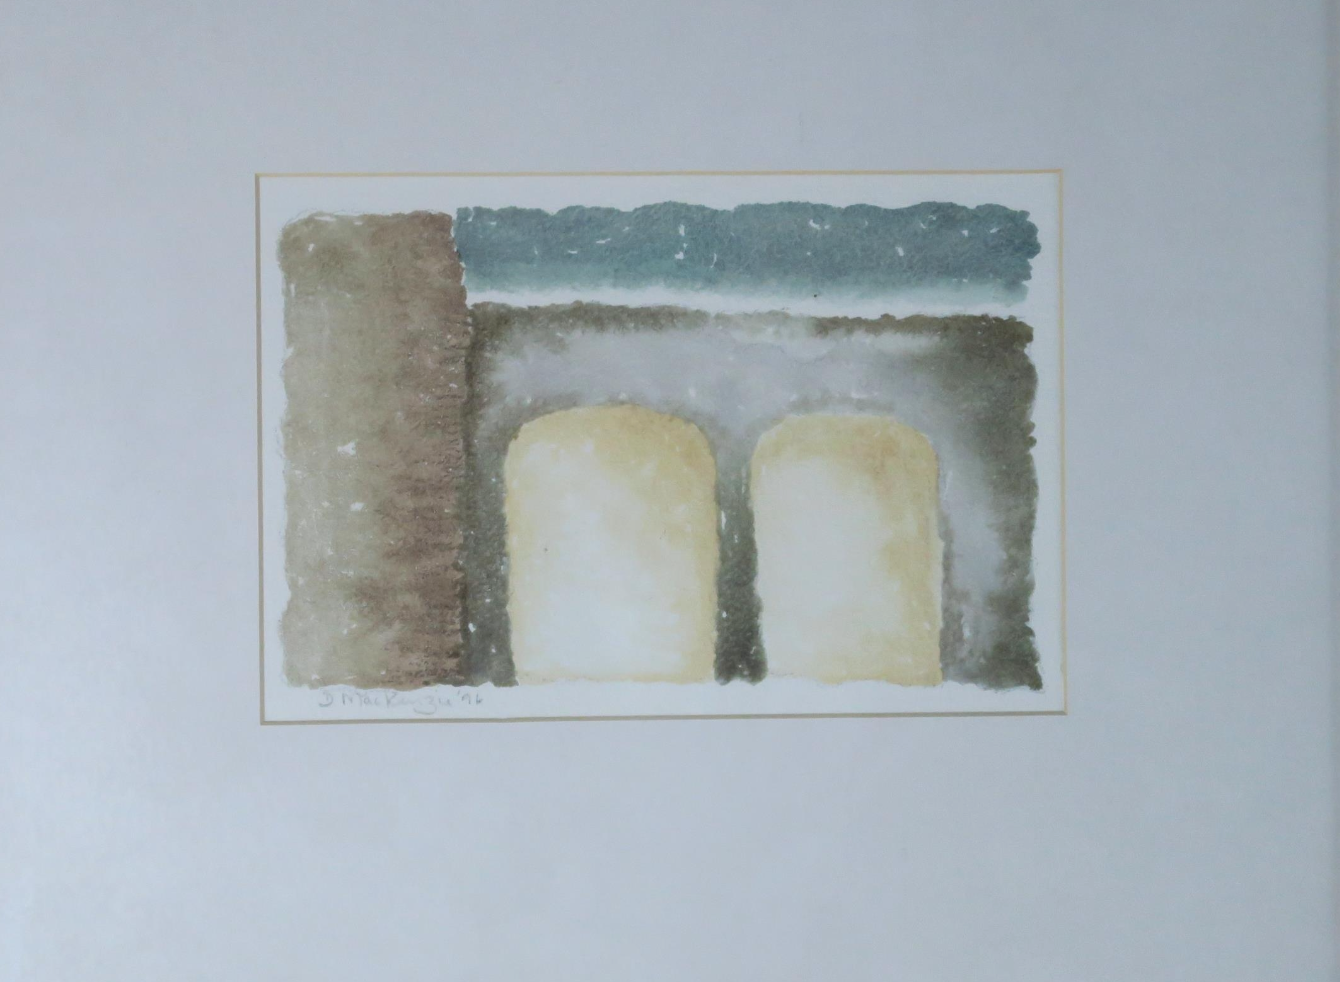 Donal Mckenzie "Torino Showers" Watercolour on Paper 1996